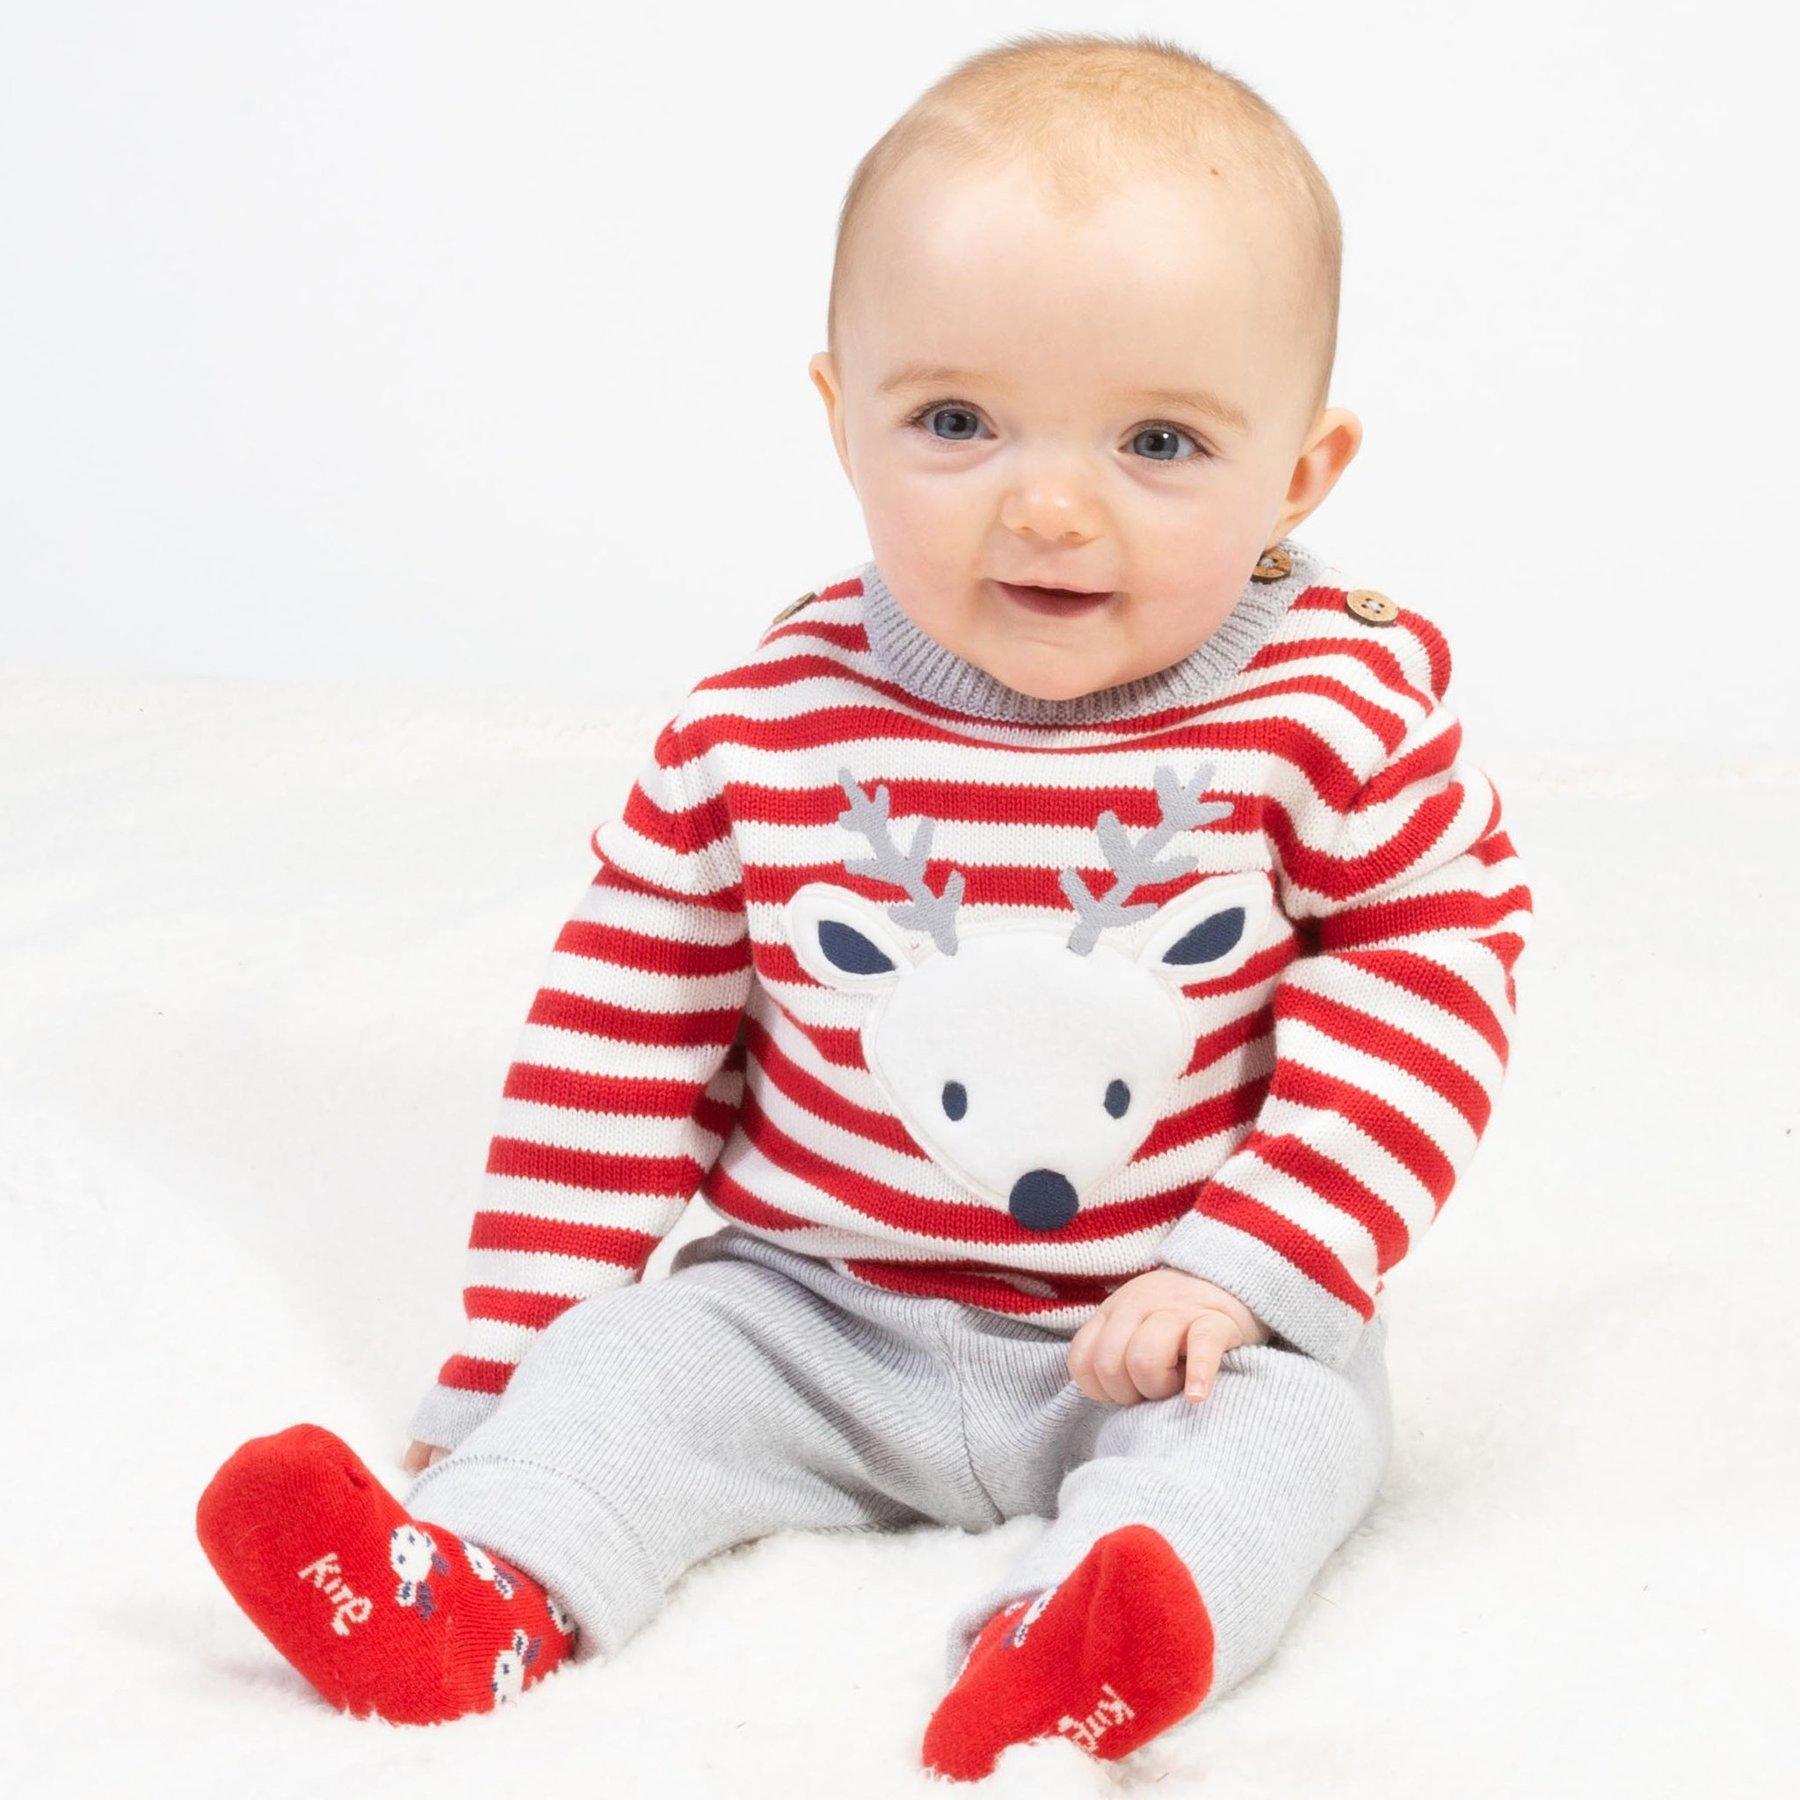 Baby wearing Kite Clothing Reindeer Knit Set